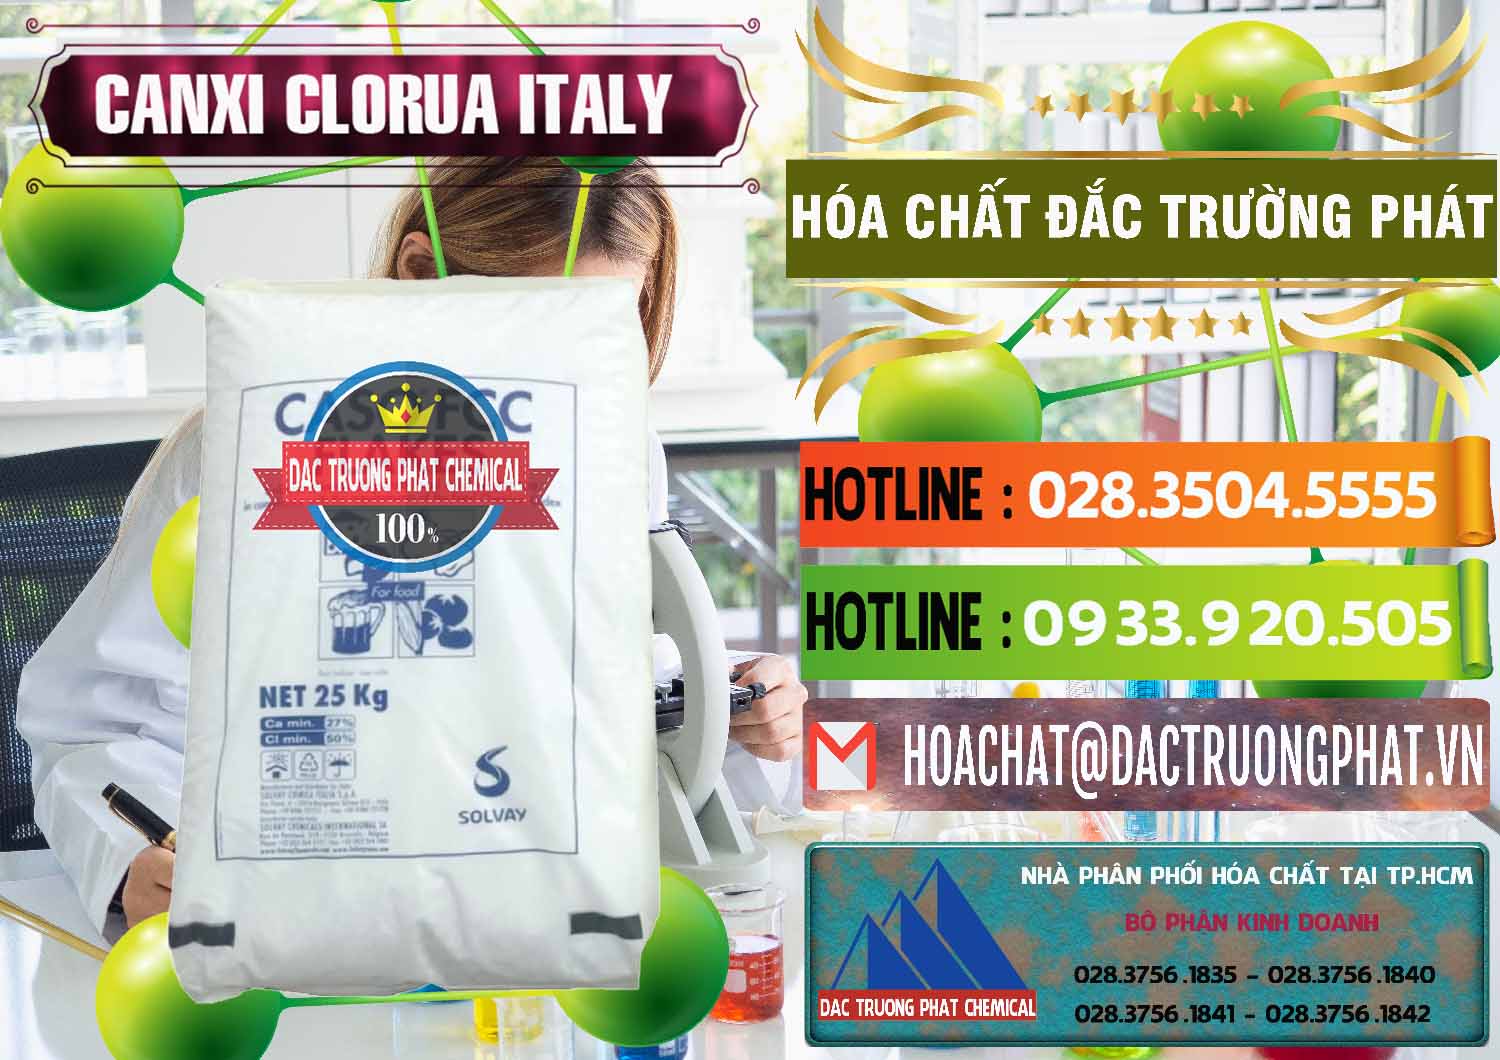 Công ty chuyên bán và cung cấp CaCl2 – Canxi Clorua Food Grade Ý Italy - 0435 - Cty chuyên phân phối và kinh doanh hóa chất tại TP.HCM - cungcaphoachat.com.vn